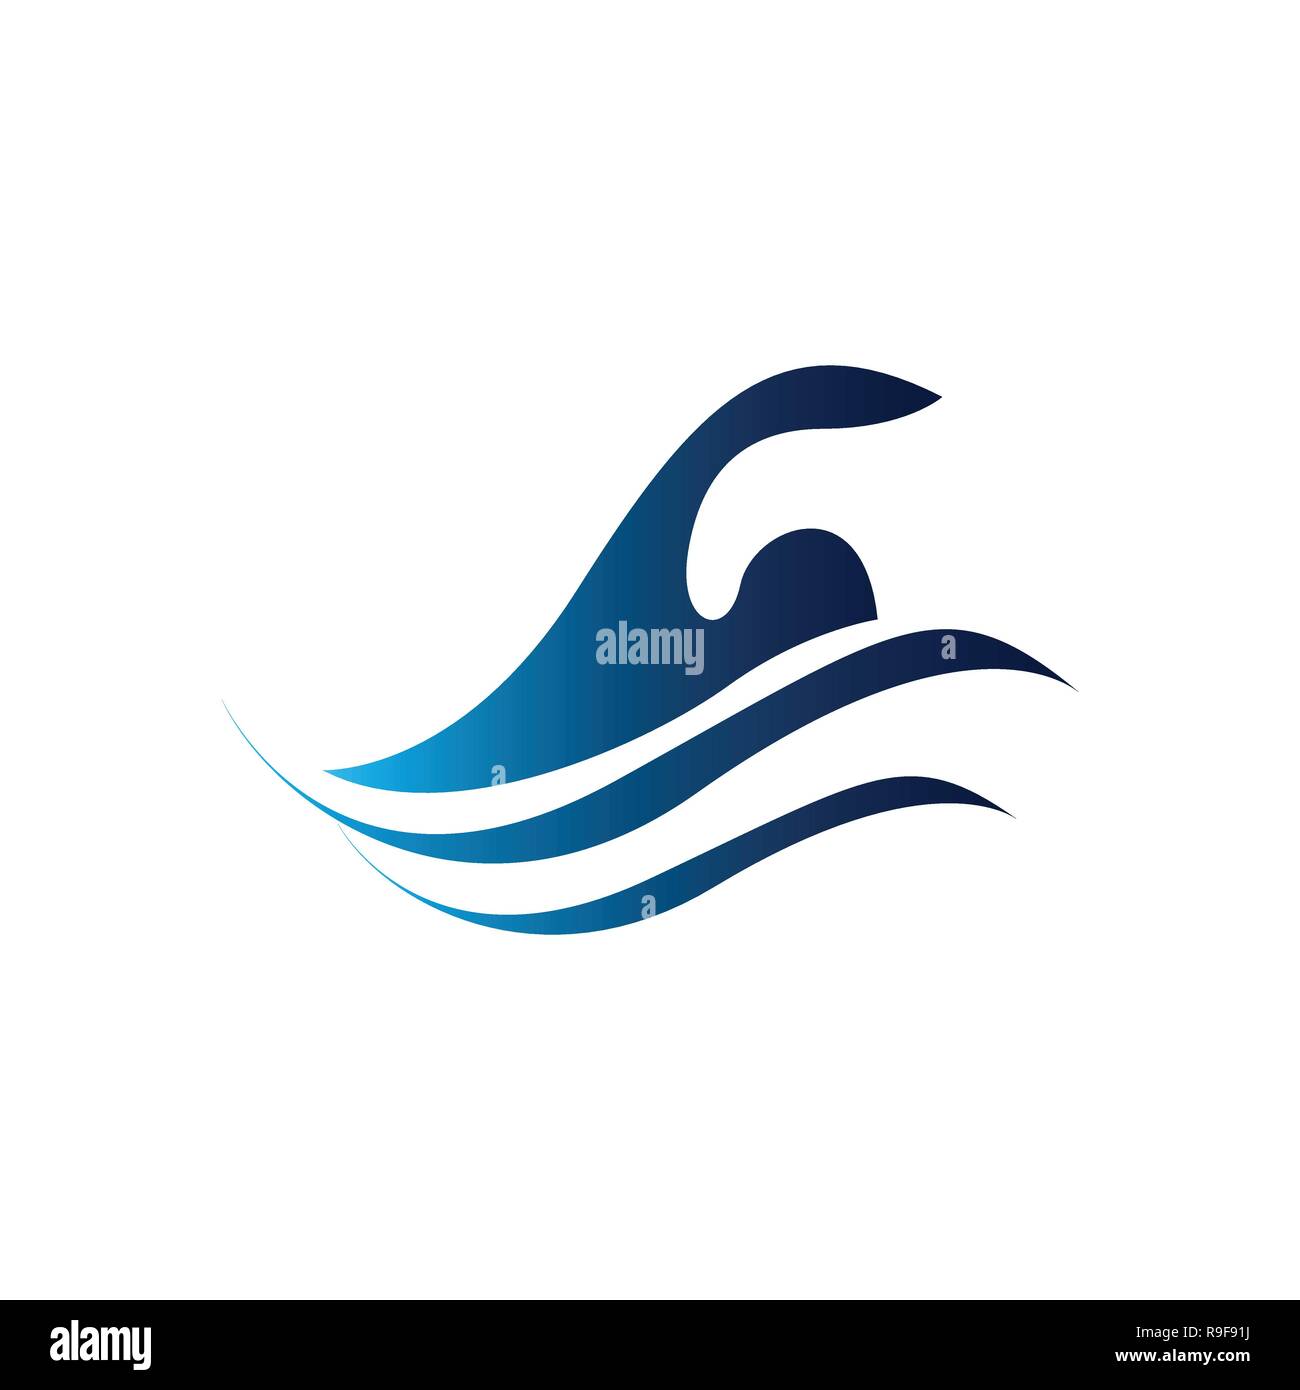 Nuotare piscina piscina icona. Umano è il nuoto, abstract illustrazione blu su sfondo bianco. Illustrazione Vettoriale